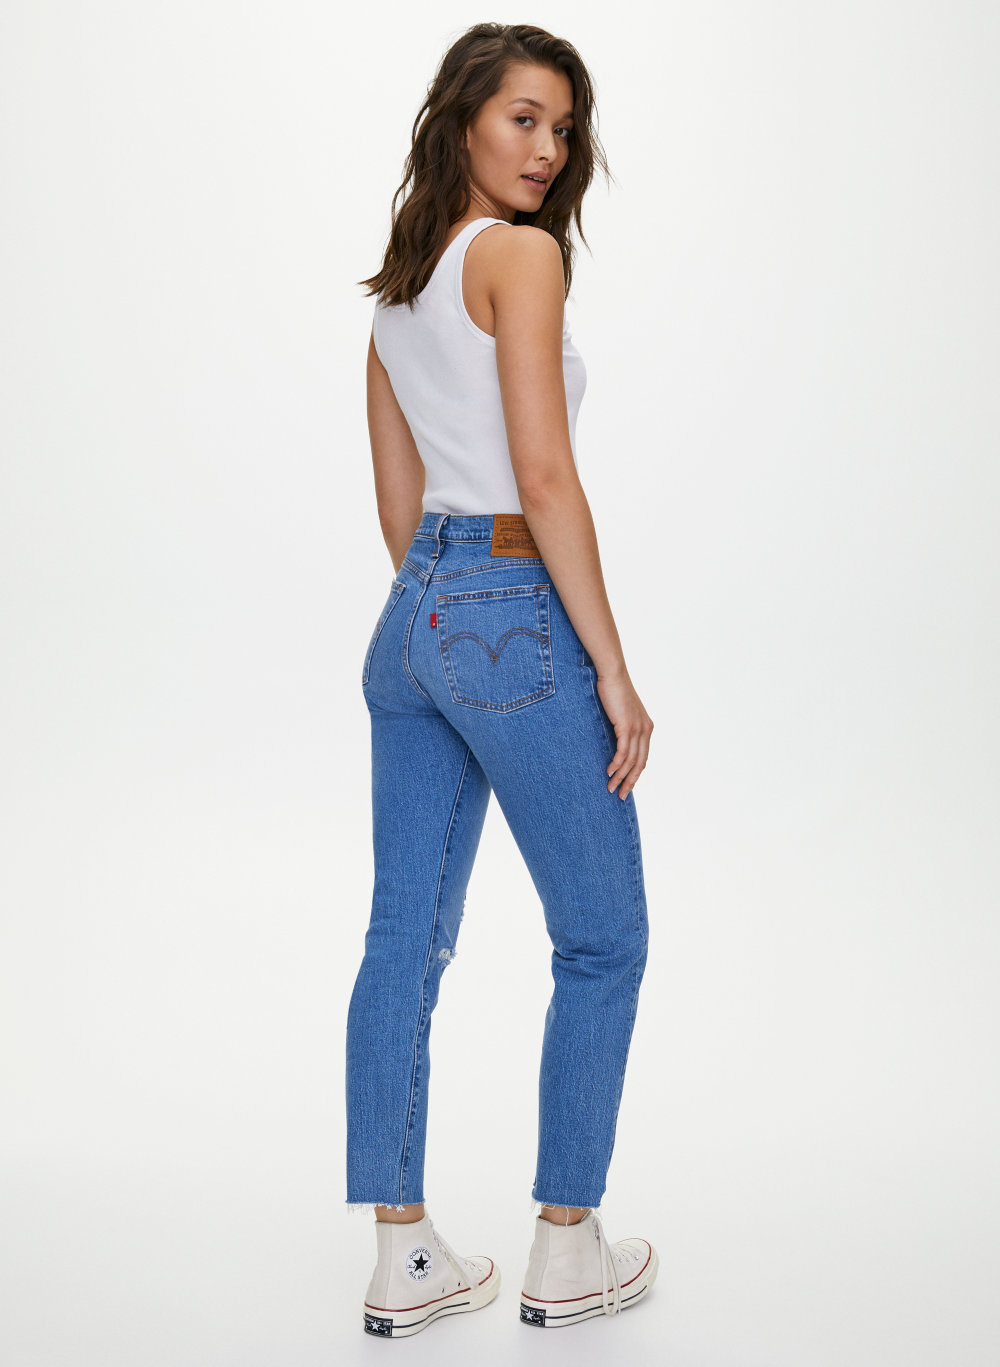 levis wedgie jeans aritzia